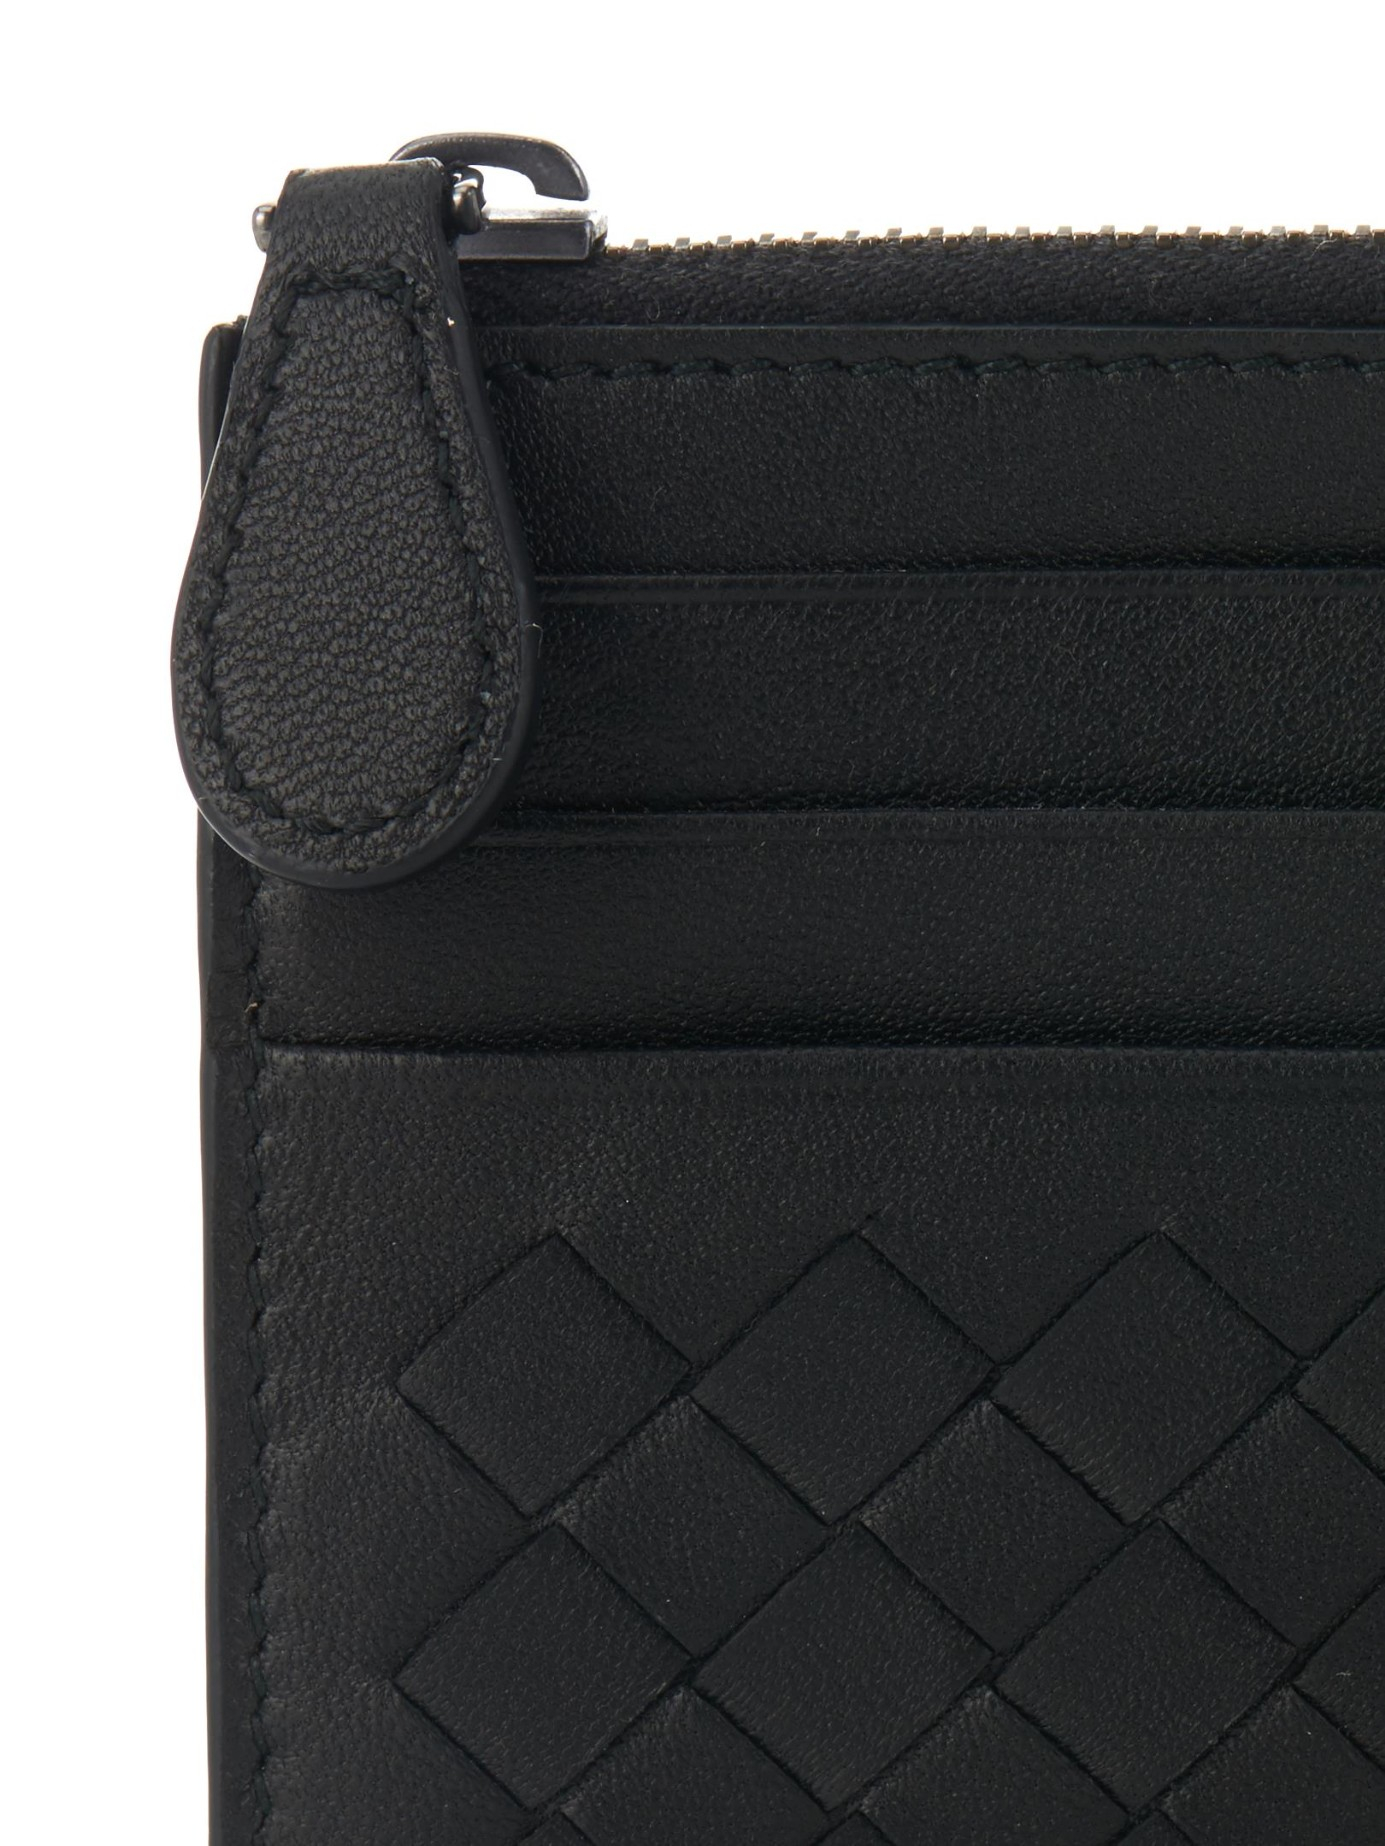 Bottega Veneta Intrecciato Leather Zip Cardholder in Black for Men 